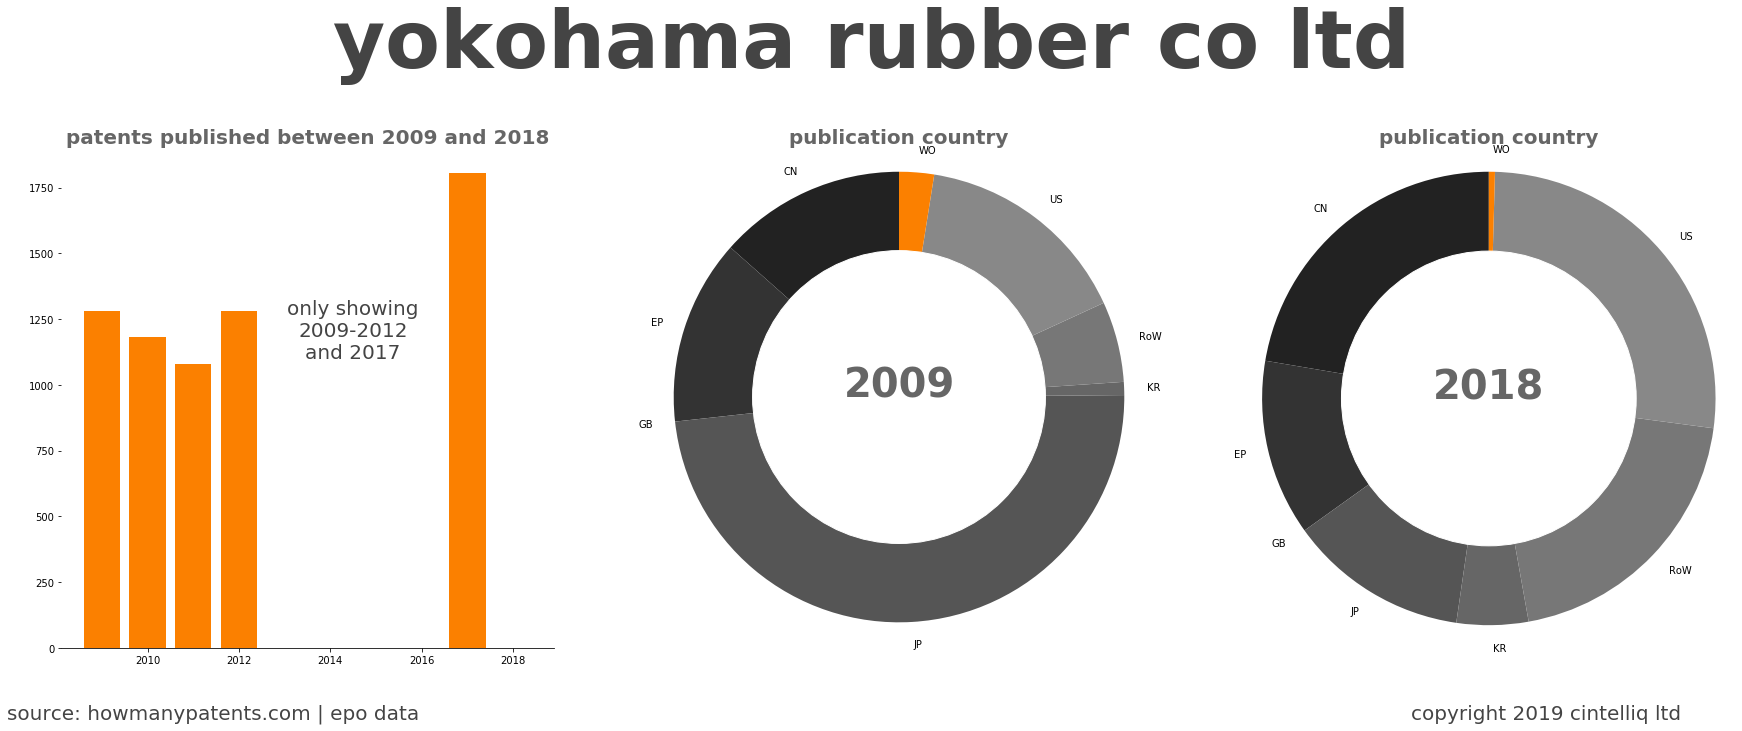 summary of patents for Yokohama Rubber Co Ltd